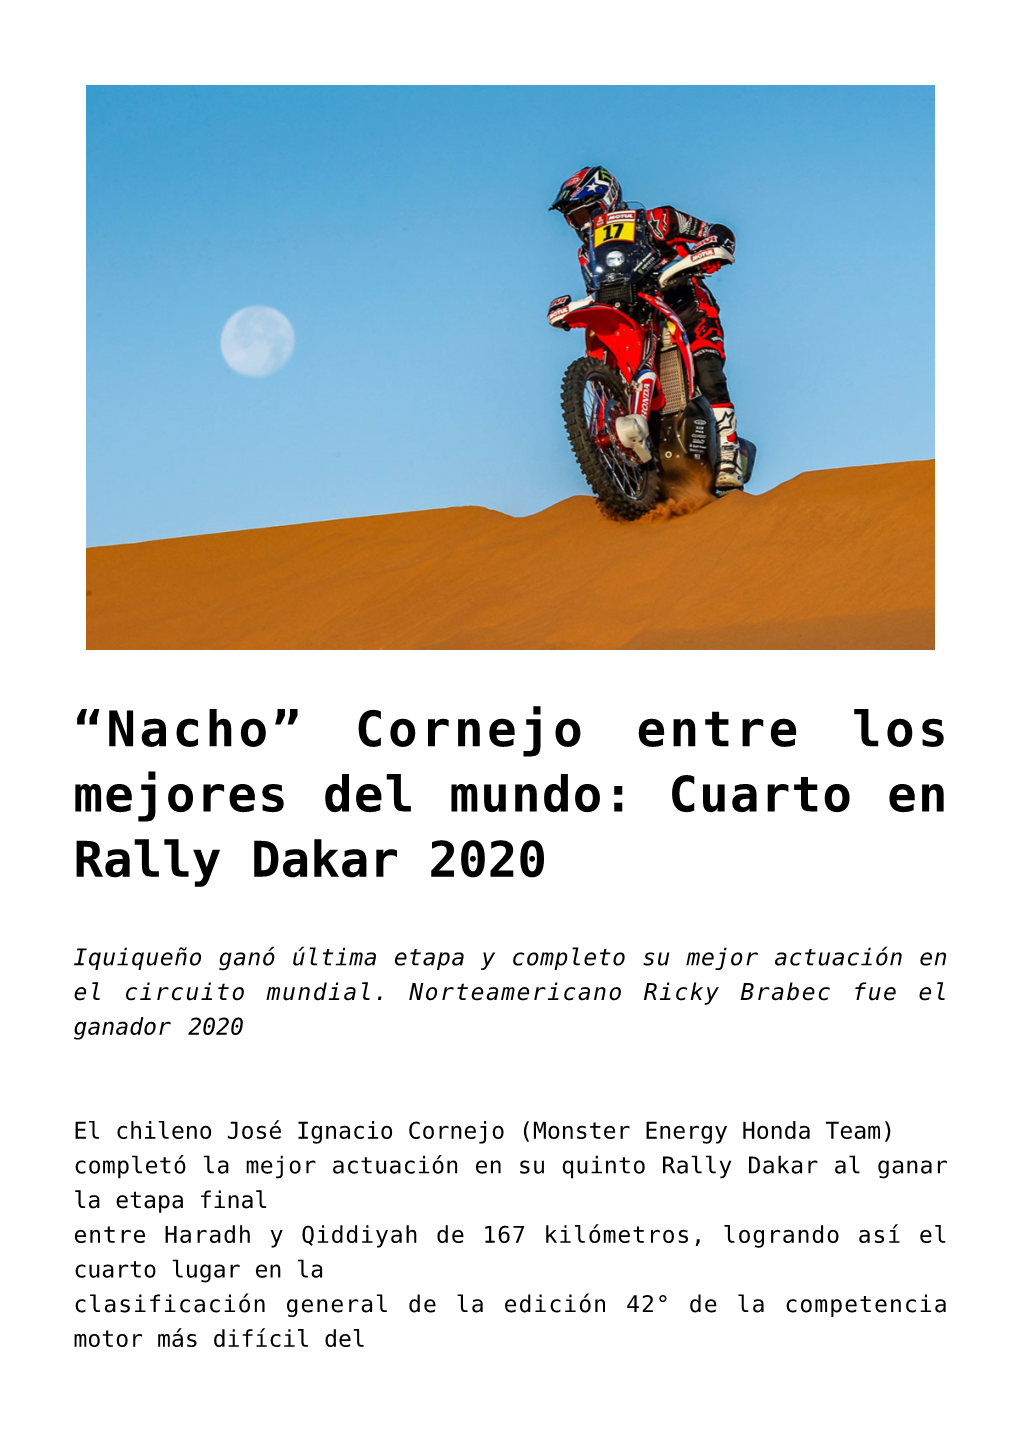 “Nacho” Cornejo Entre Los Mejores Del Mundo: Cuarto En Rally Dakar 2020